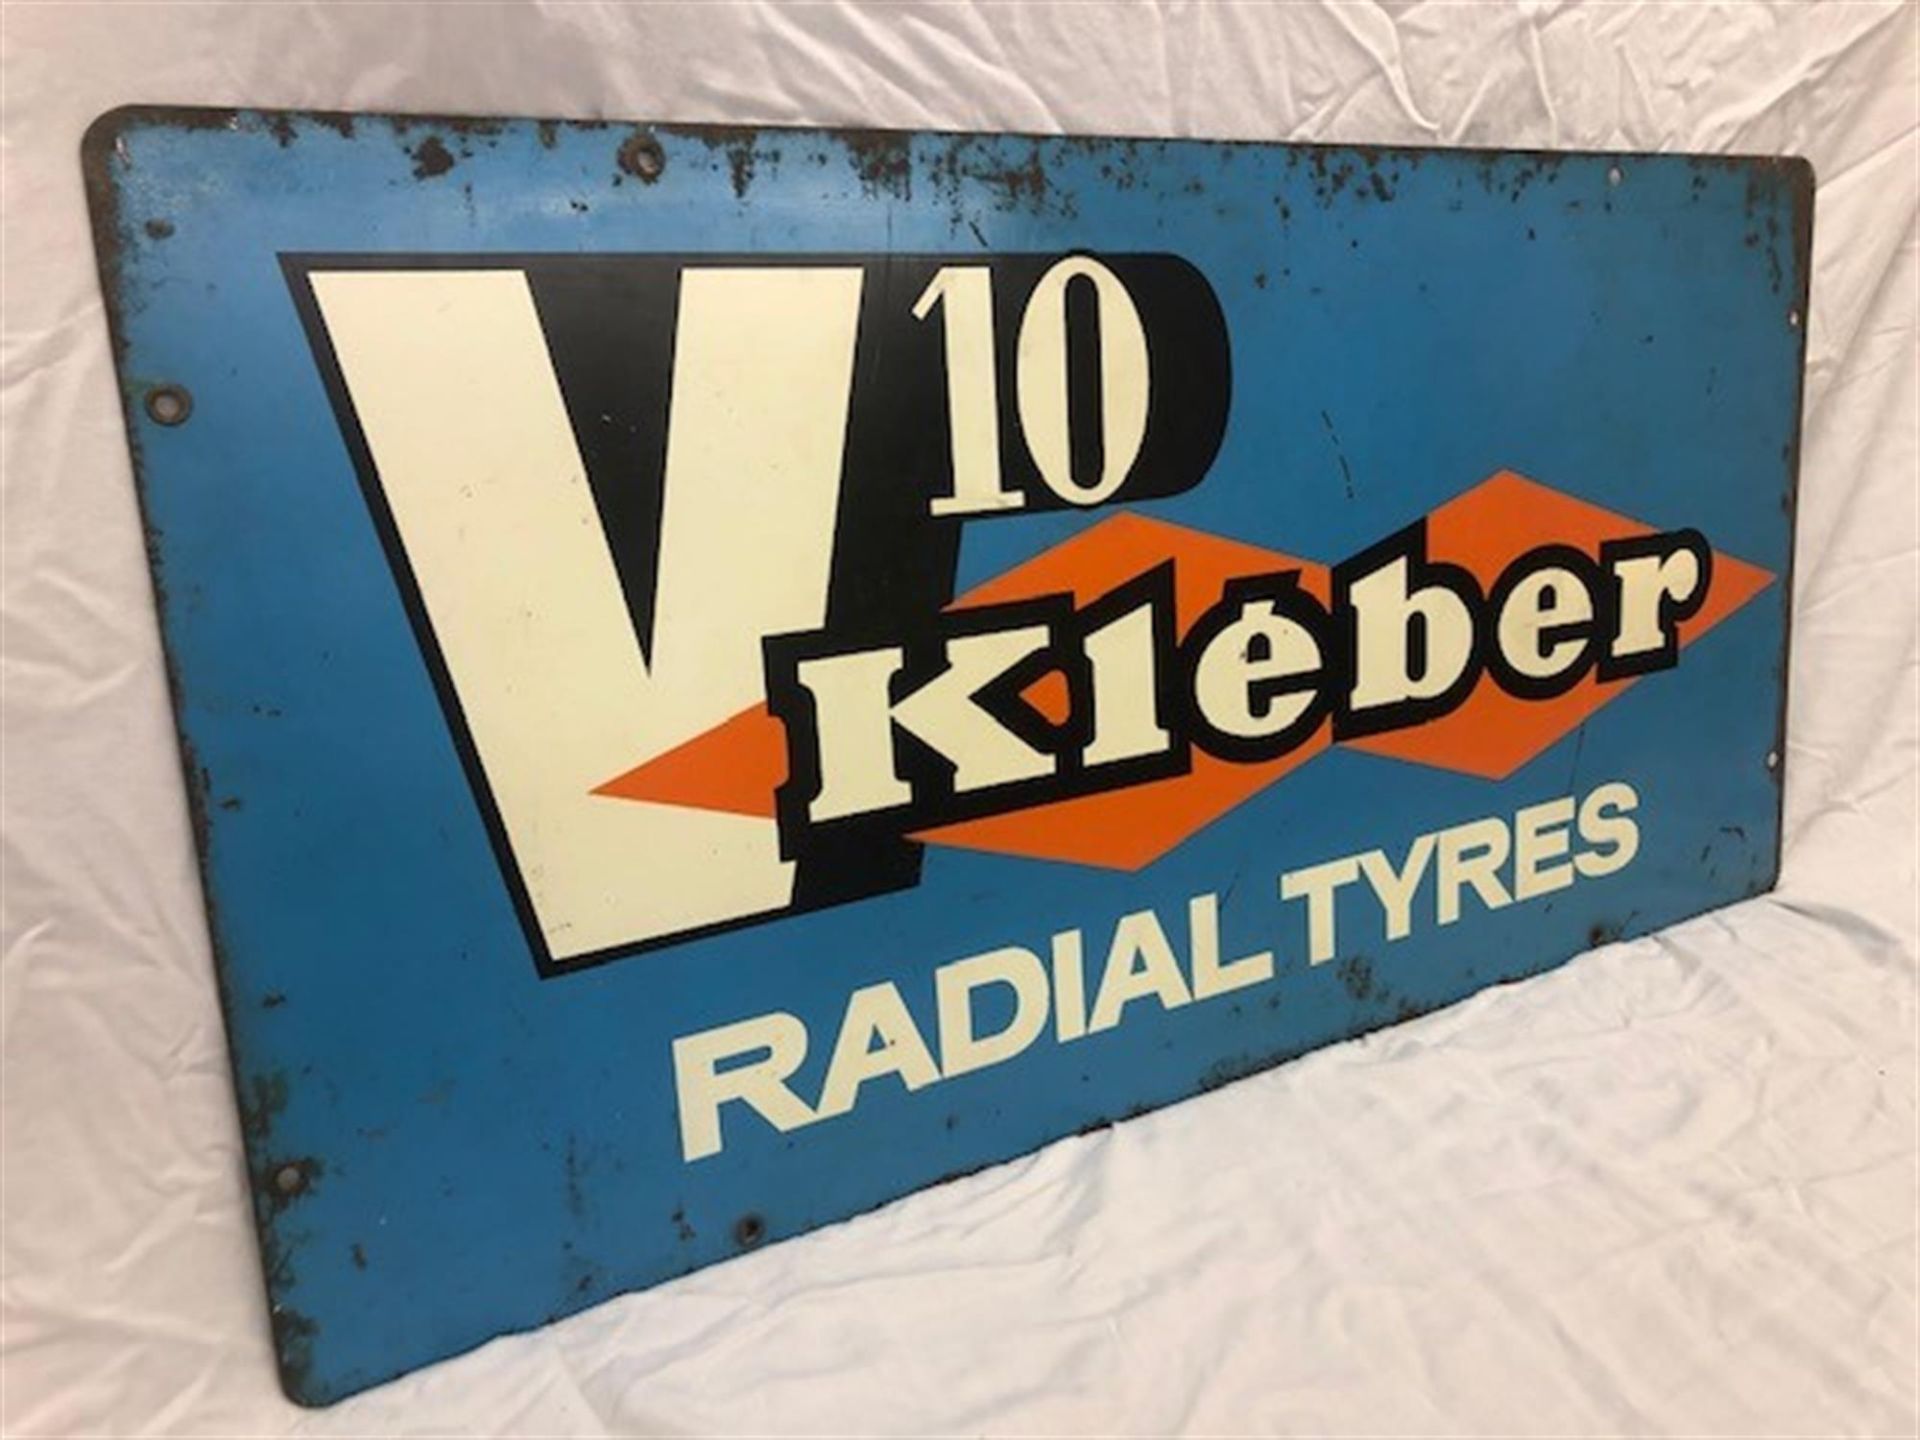 An Original Enamelled Metal Advertising Sign for V10 Kléber Radial Tyres - Image 2 of 4